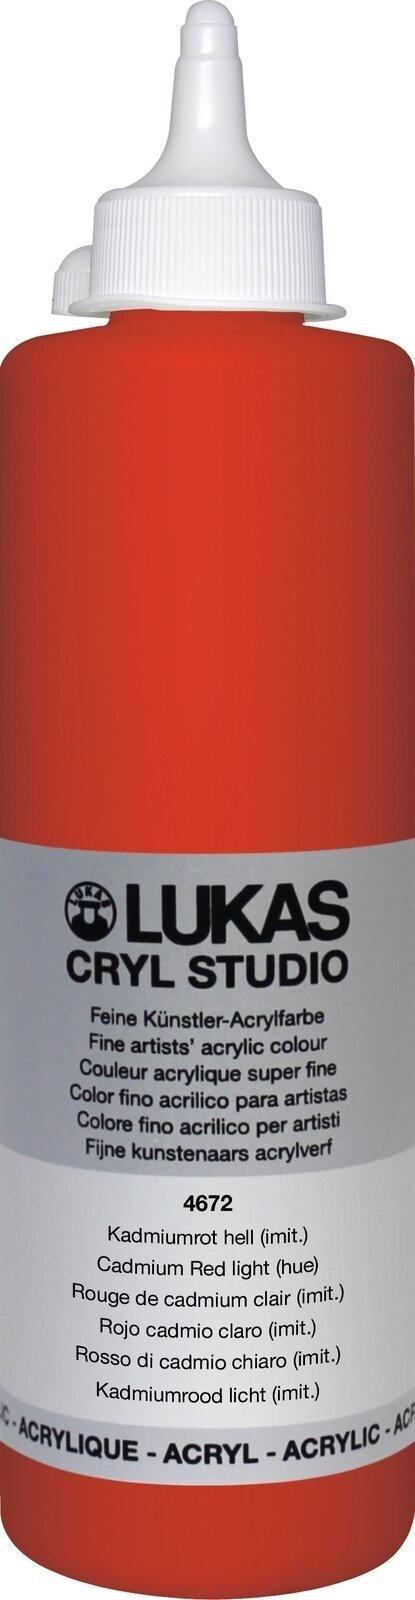 Farba akrylowa Lukas Cryl Studio Farba akrylowa 500 ml Cadmium Red Light Hue